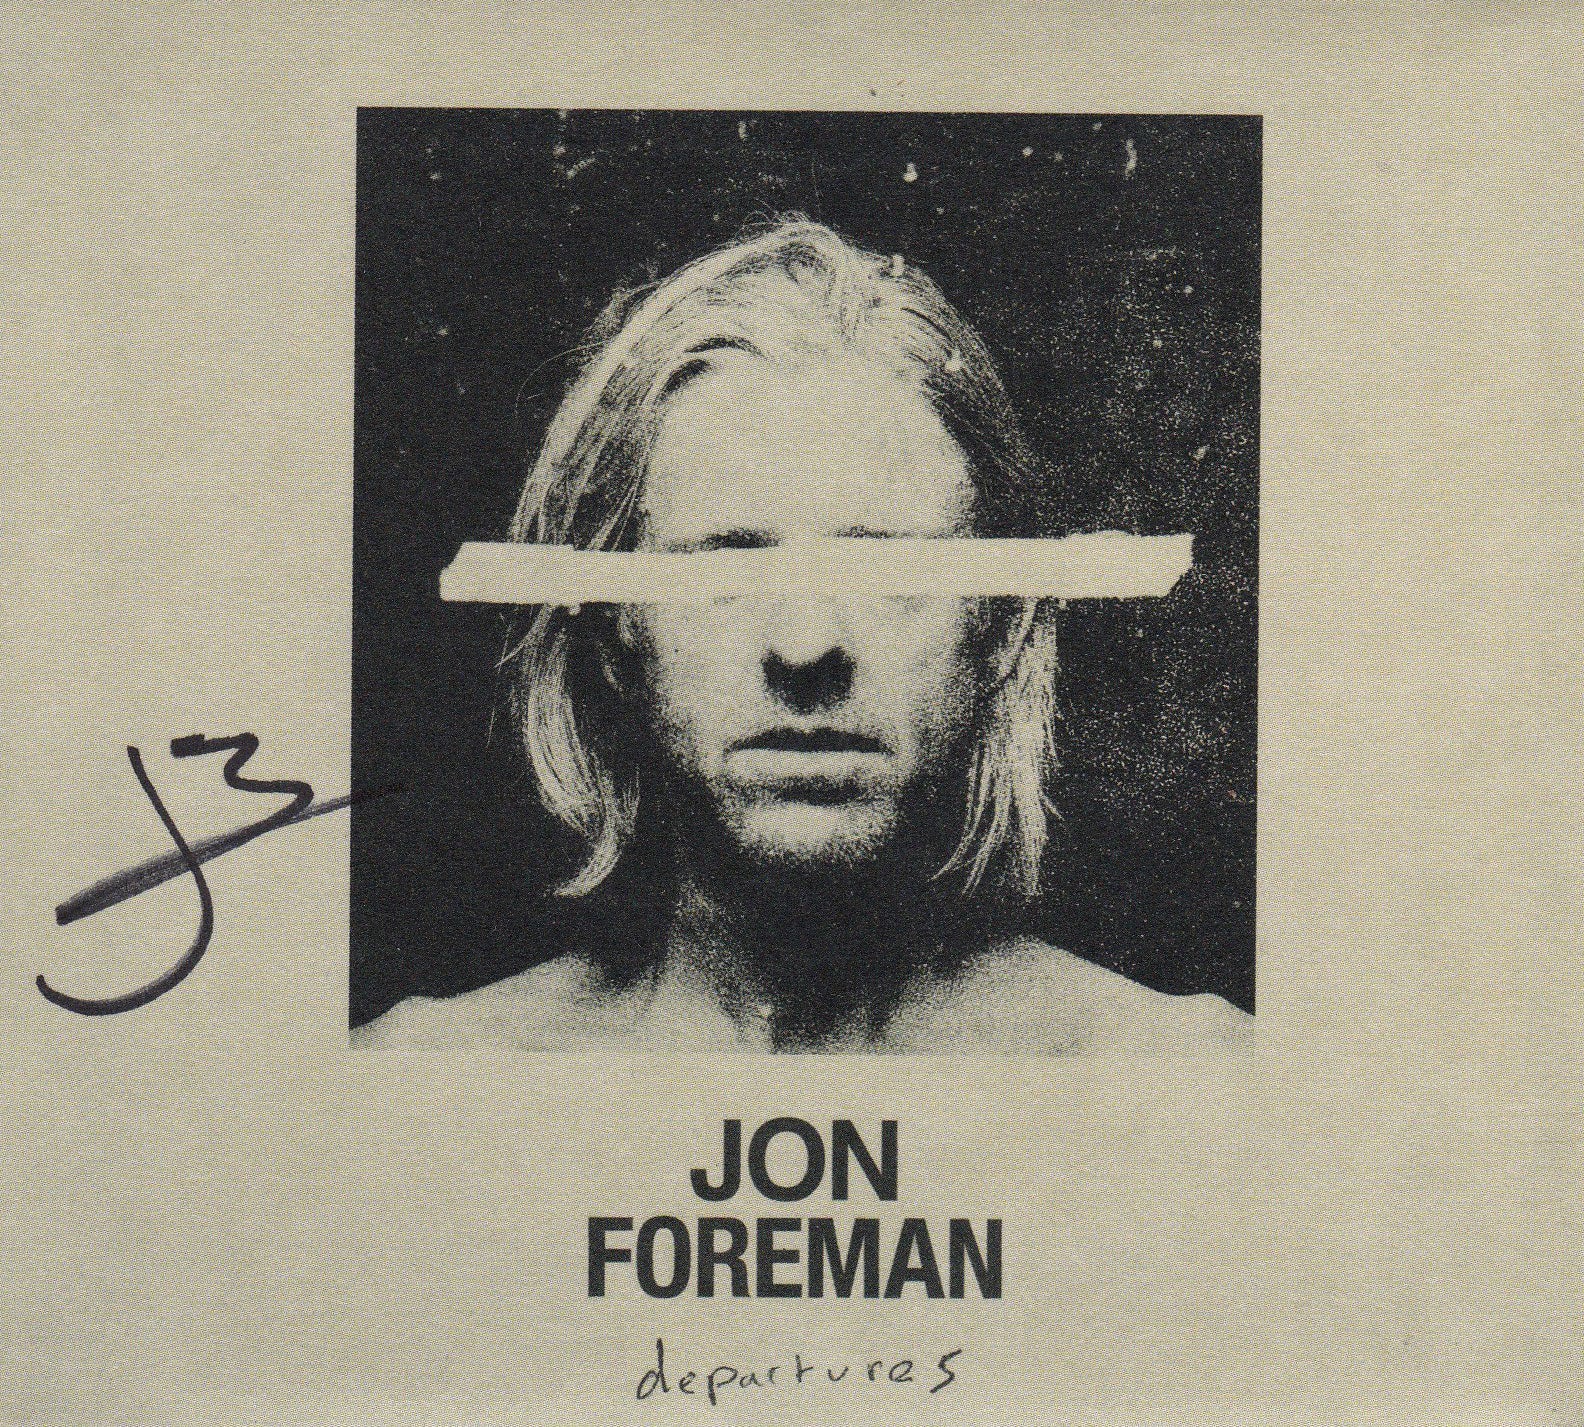 Jon Foreman: Departures Vinyl LP